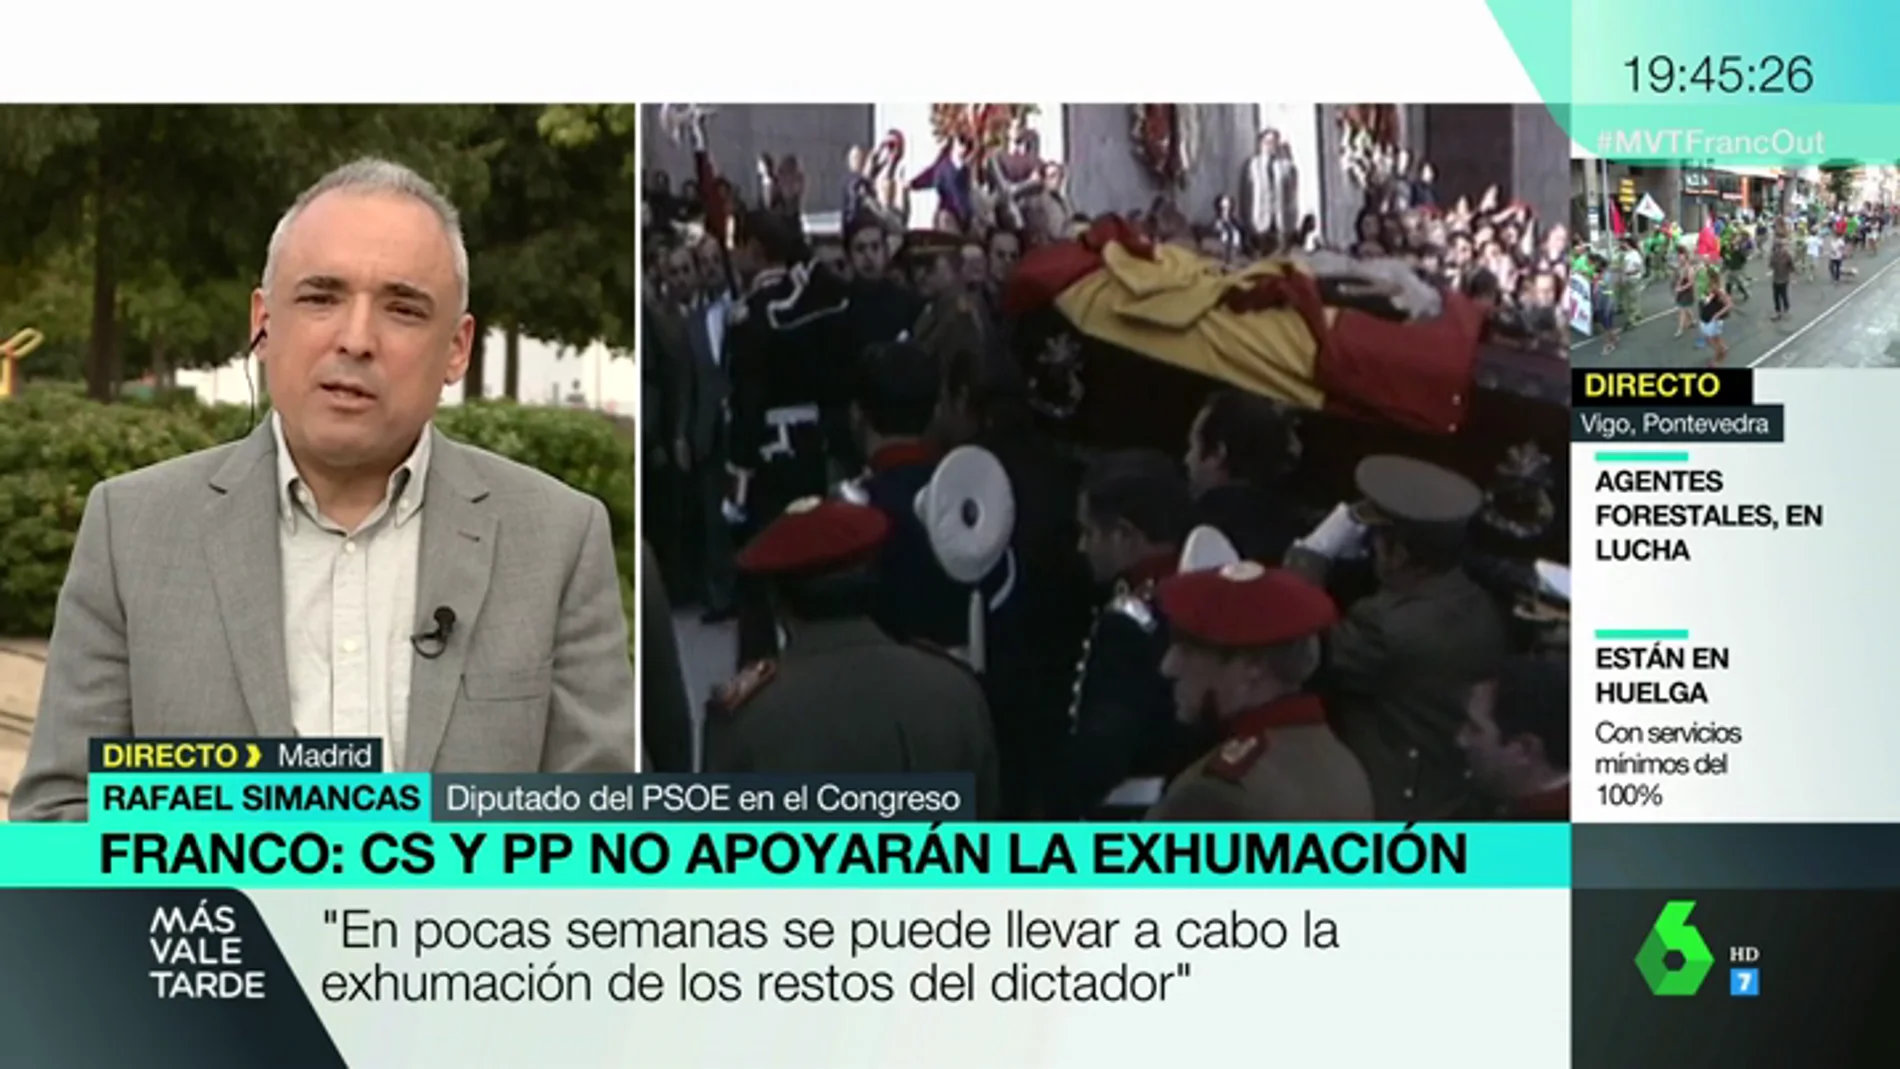 Rafael Simancas: "En pocas semanas se puede llevar a cabo la exhumación del dictador"